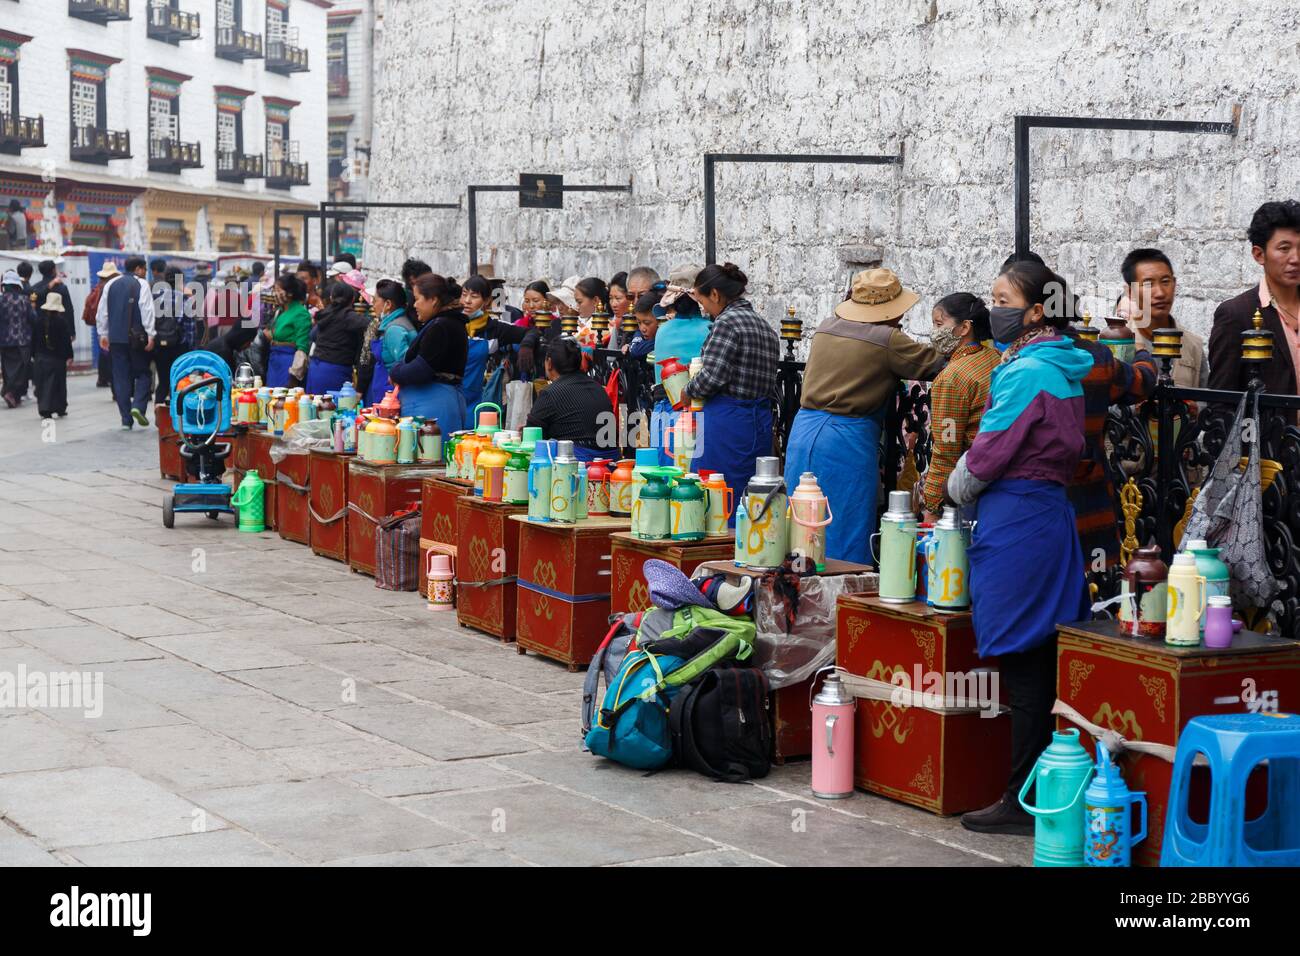 Pilger warten in der Schlange am Eingang des Jokhang-Tempels. Wichtiger Ort des tibetischen buddhismus. Frauen servieren heiße Getränke für die Gläubigen. Stockfoto